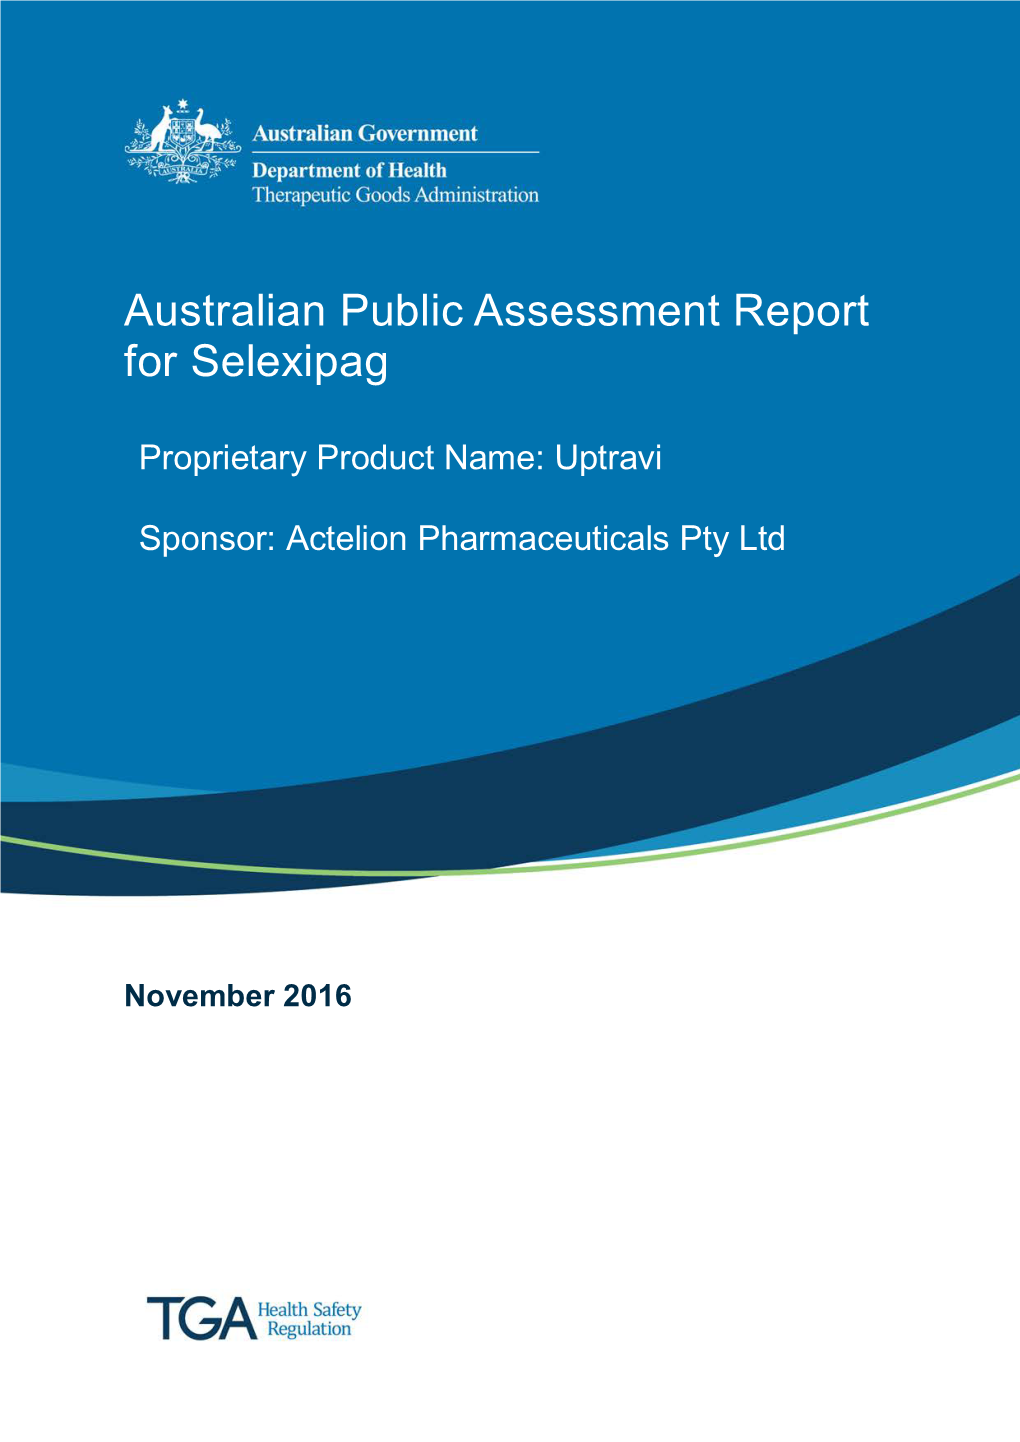 Australian Public Assessment Report for Selexipag